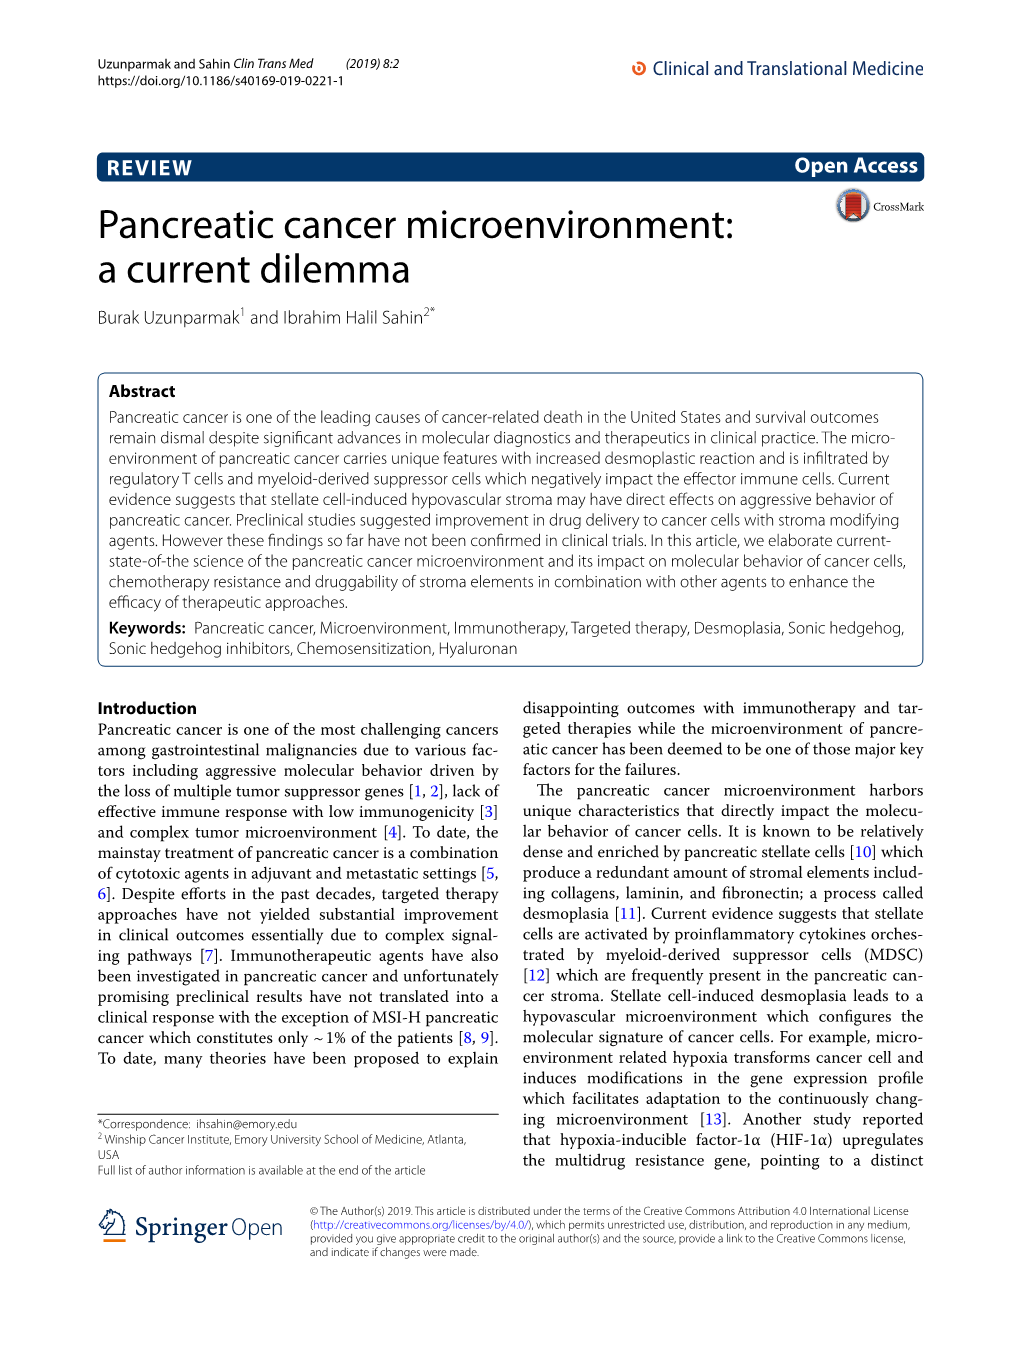 Pancreatic Cancer Microenvironment: a Current Dilemma Burak Uzunparmak1 and Ibrahim Halil Sahin2*